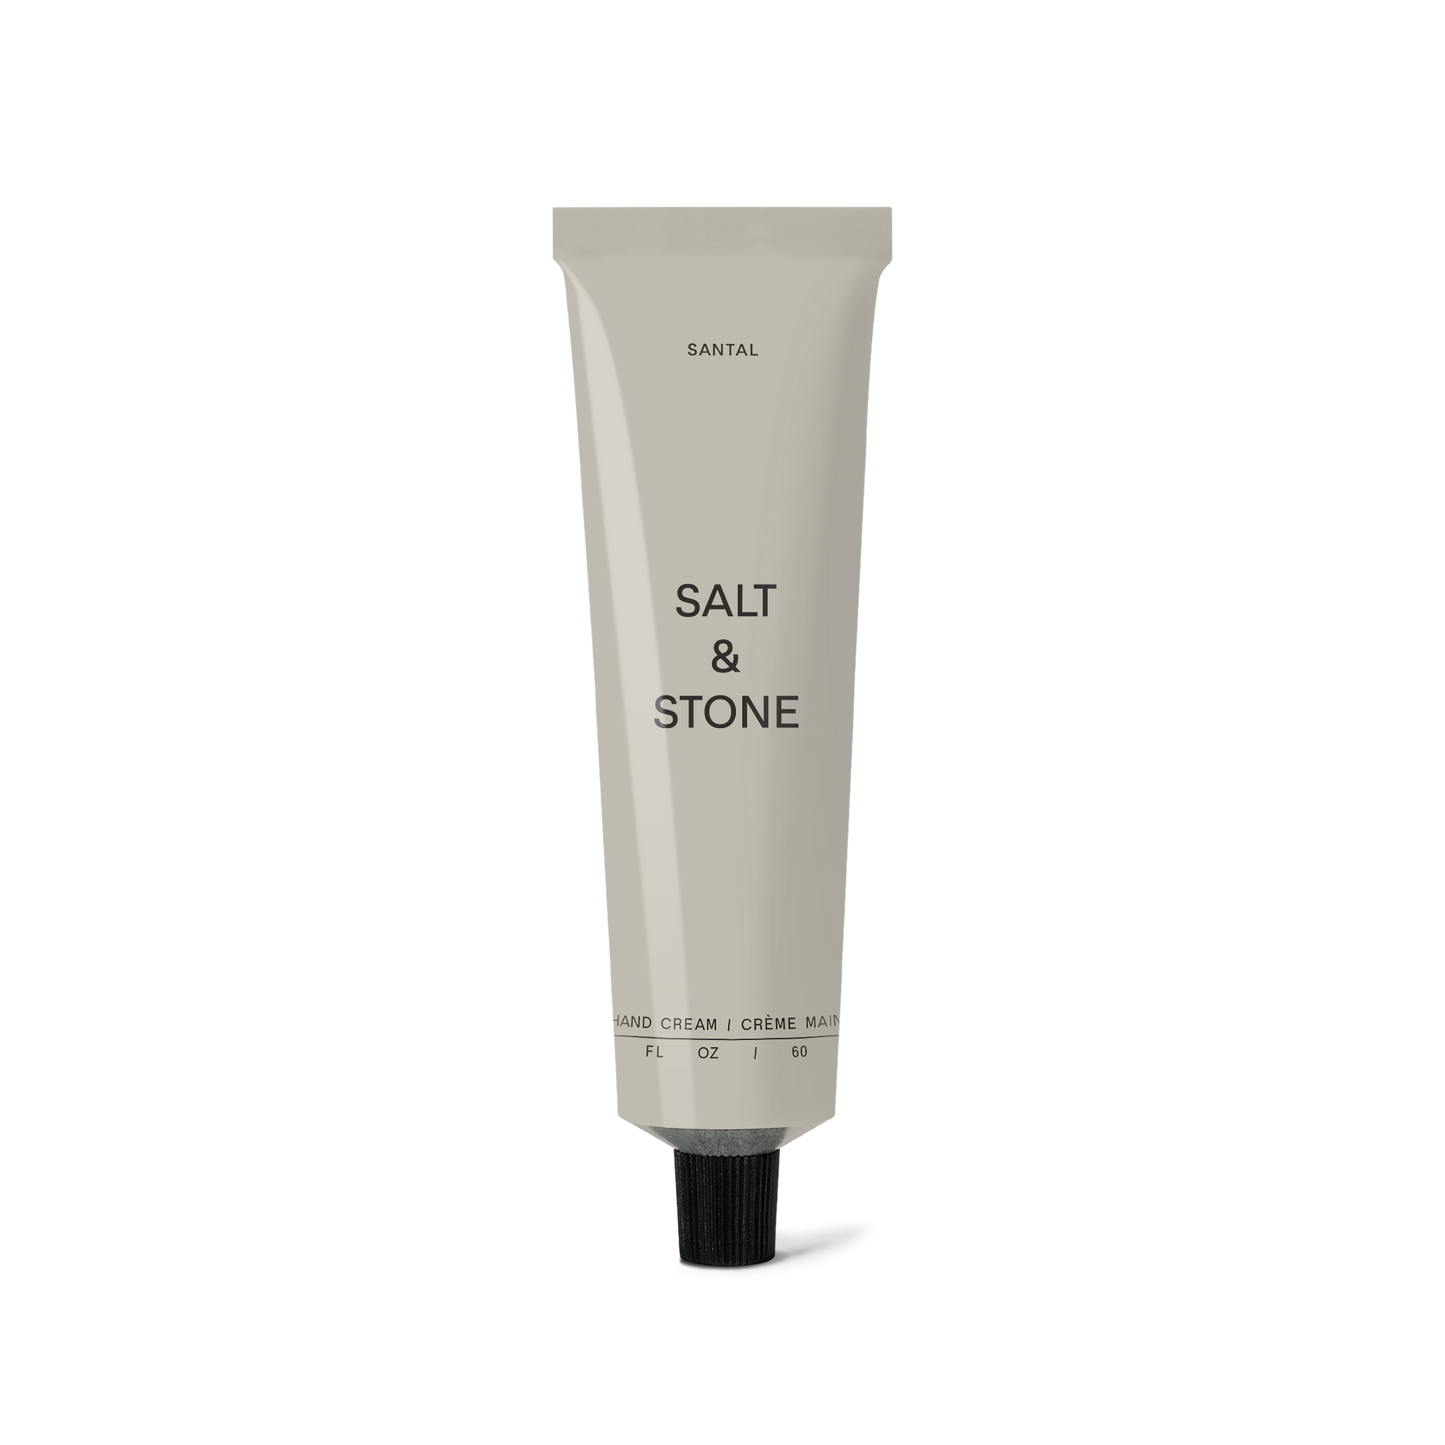 Hand Cream - Santal - SALT & STONE